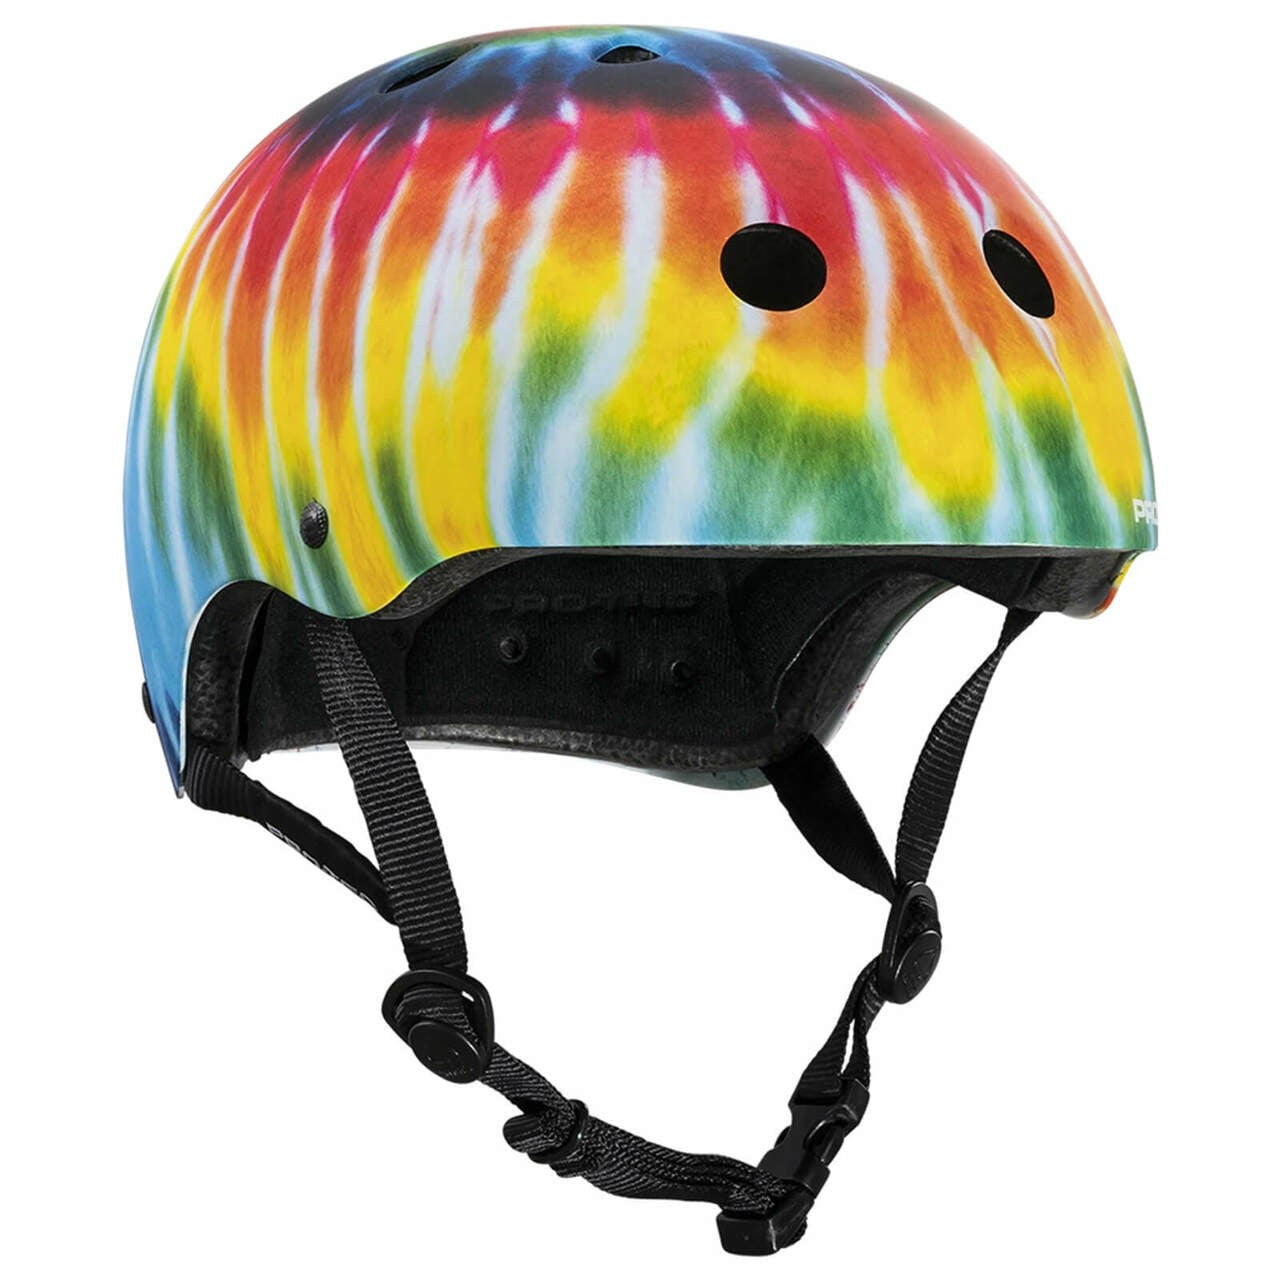 Protec Pro Classic Certified Helmet Tie Dye